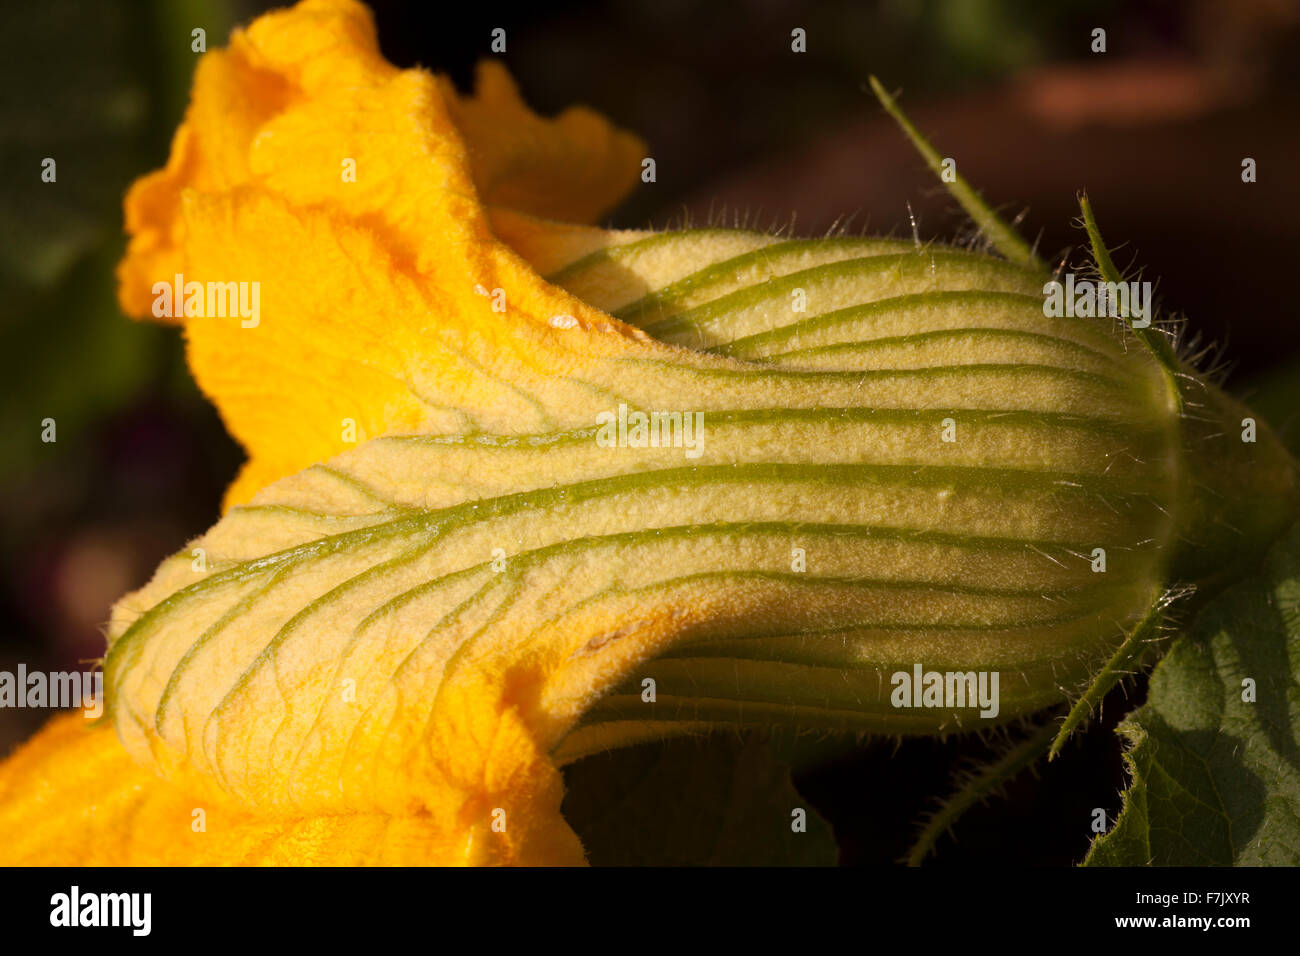 La calabaza de invierno (Cucurbita maxima) flores comestibles, mostrando pétalos veteado en tonos crema, verde brillante y amarillo brillante Foto de stock